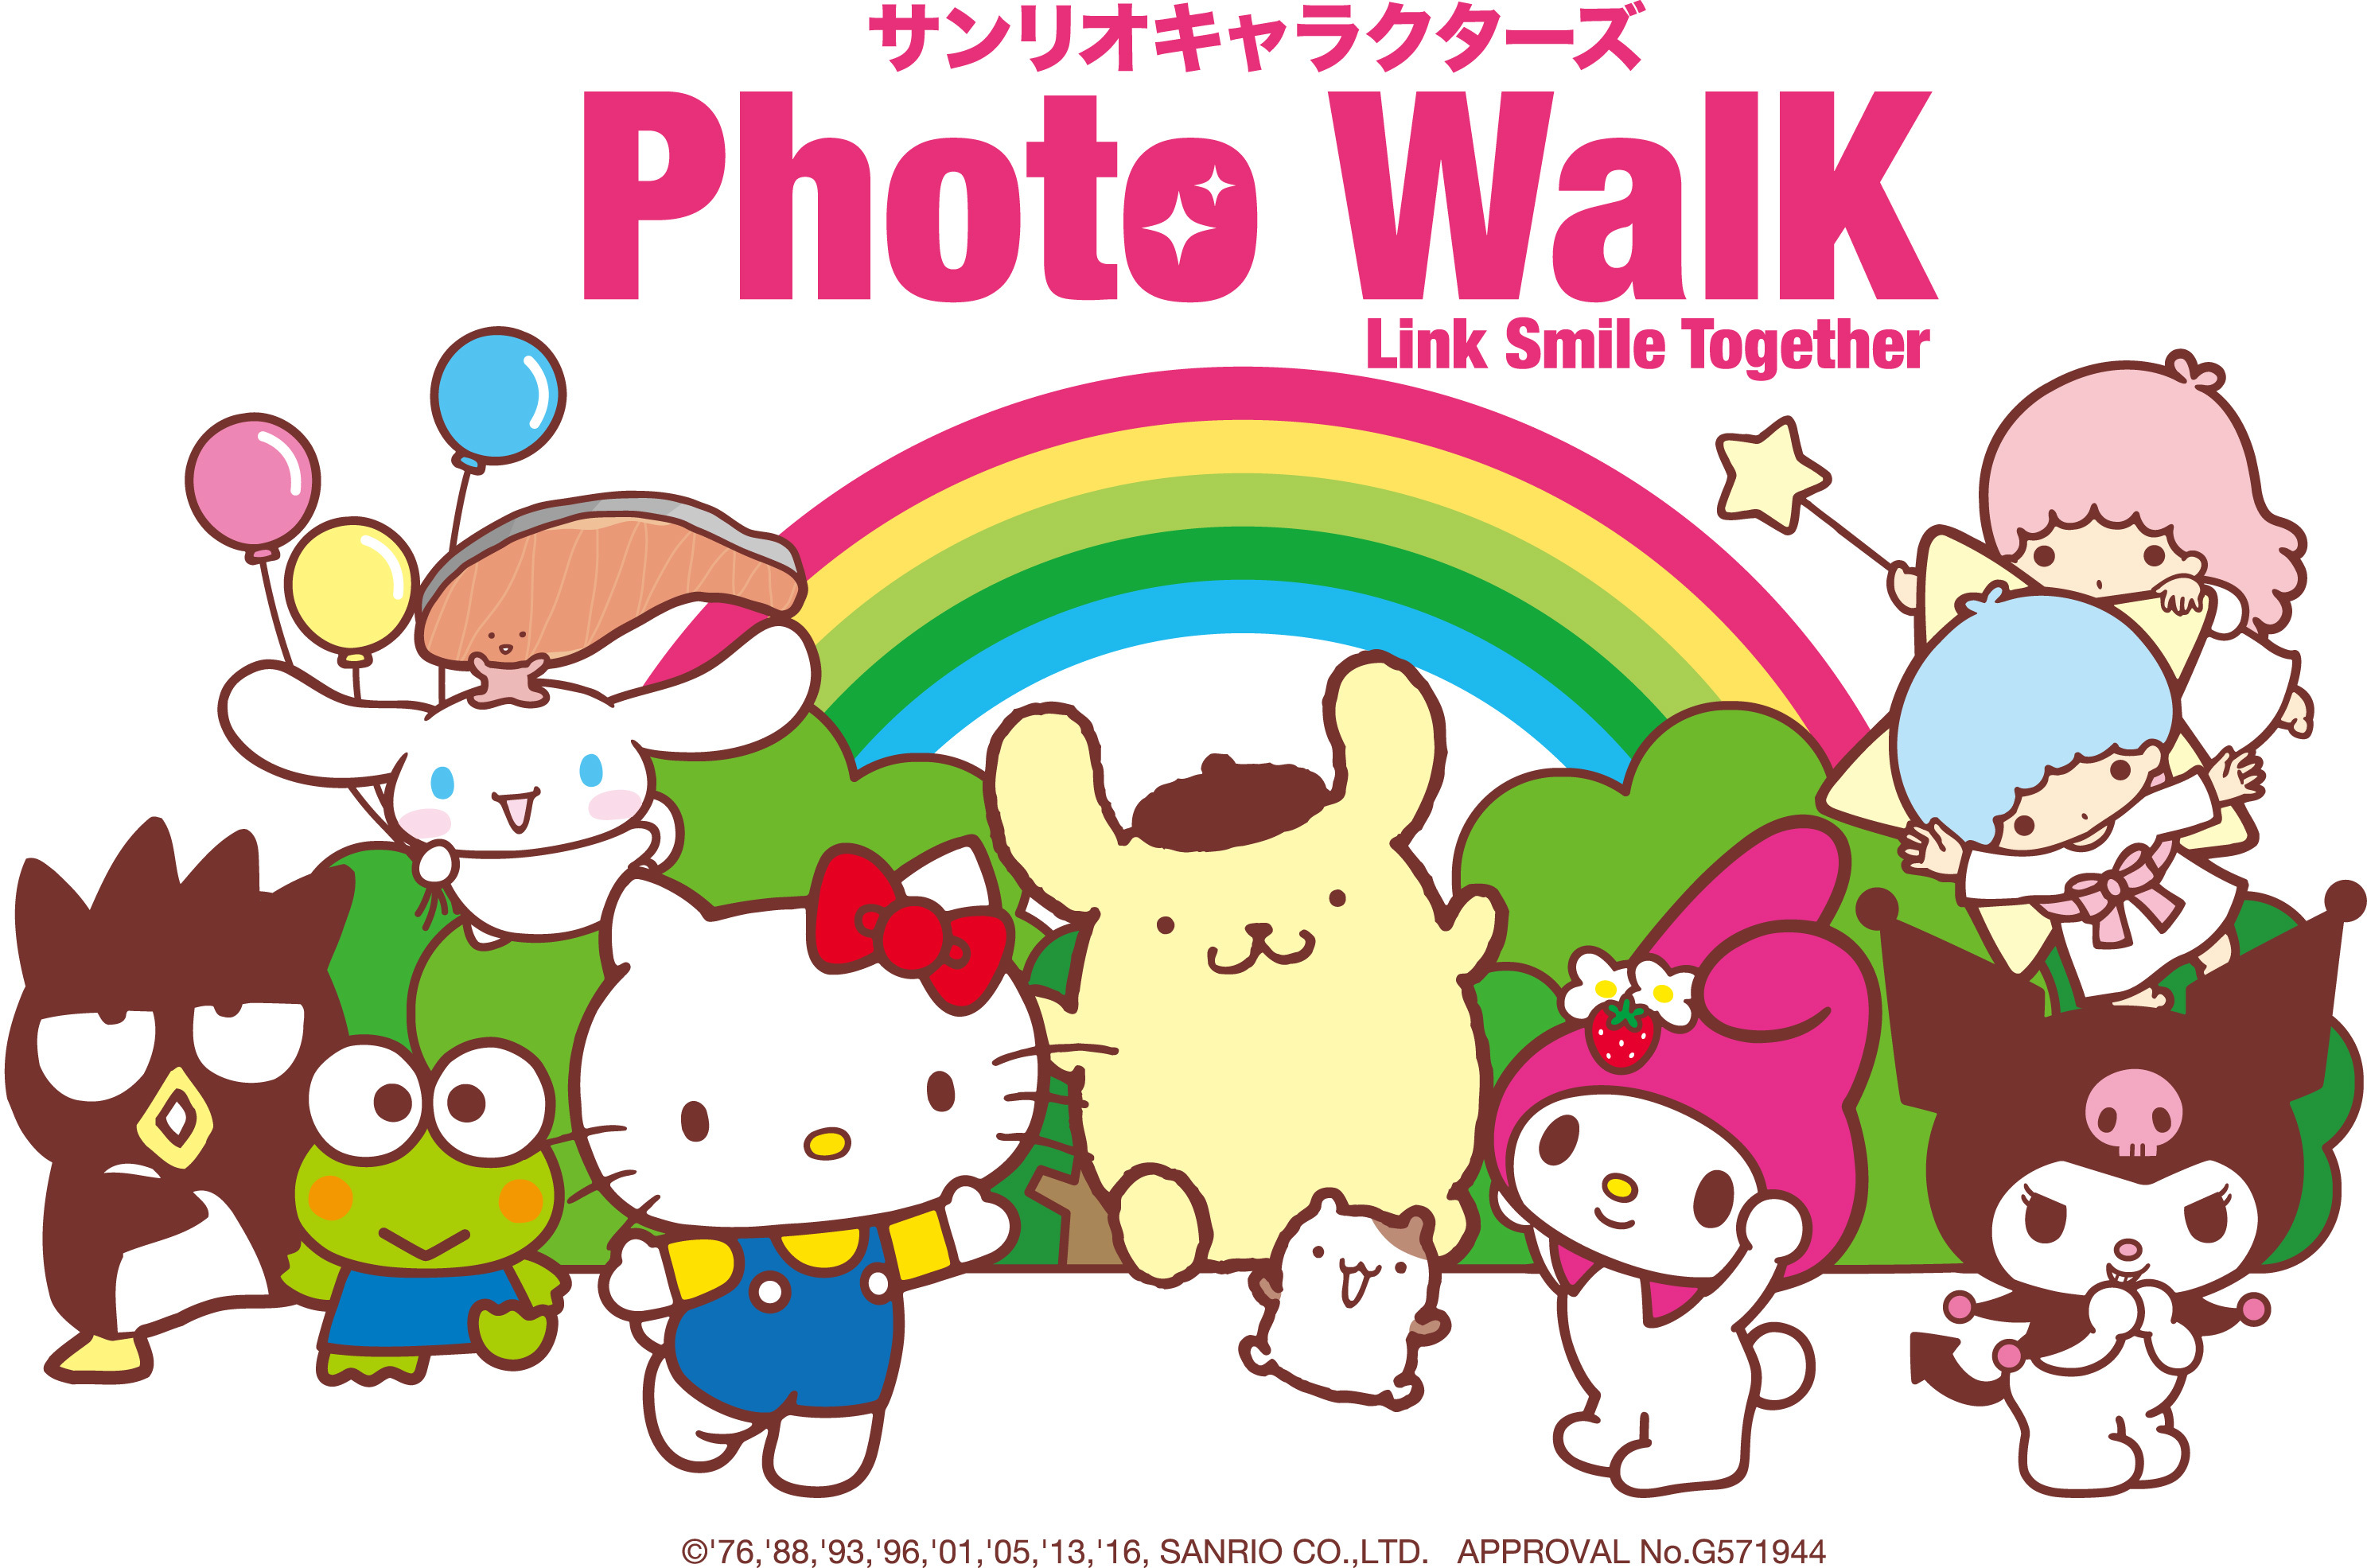 サンリオキャラクターズphoto Walk 開催 人気サンリオキャラクターたちの初の屋外ファンミーティング 募集終了